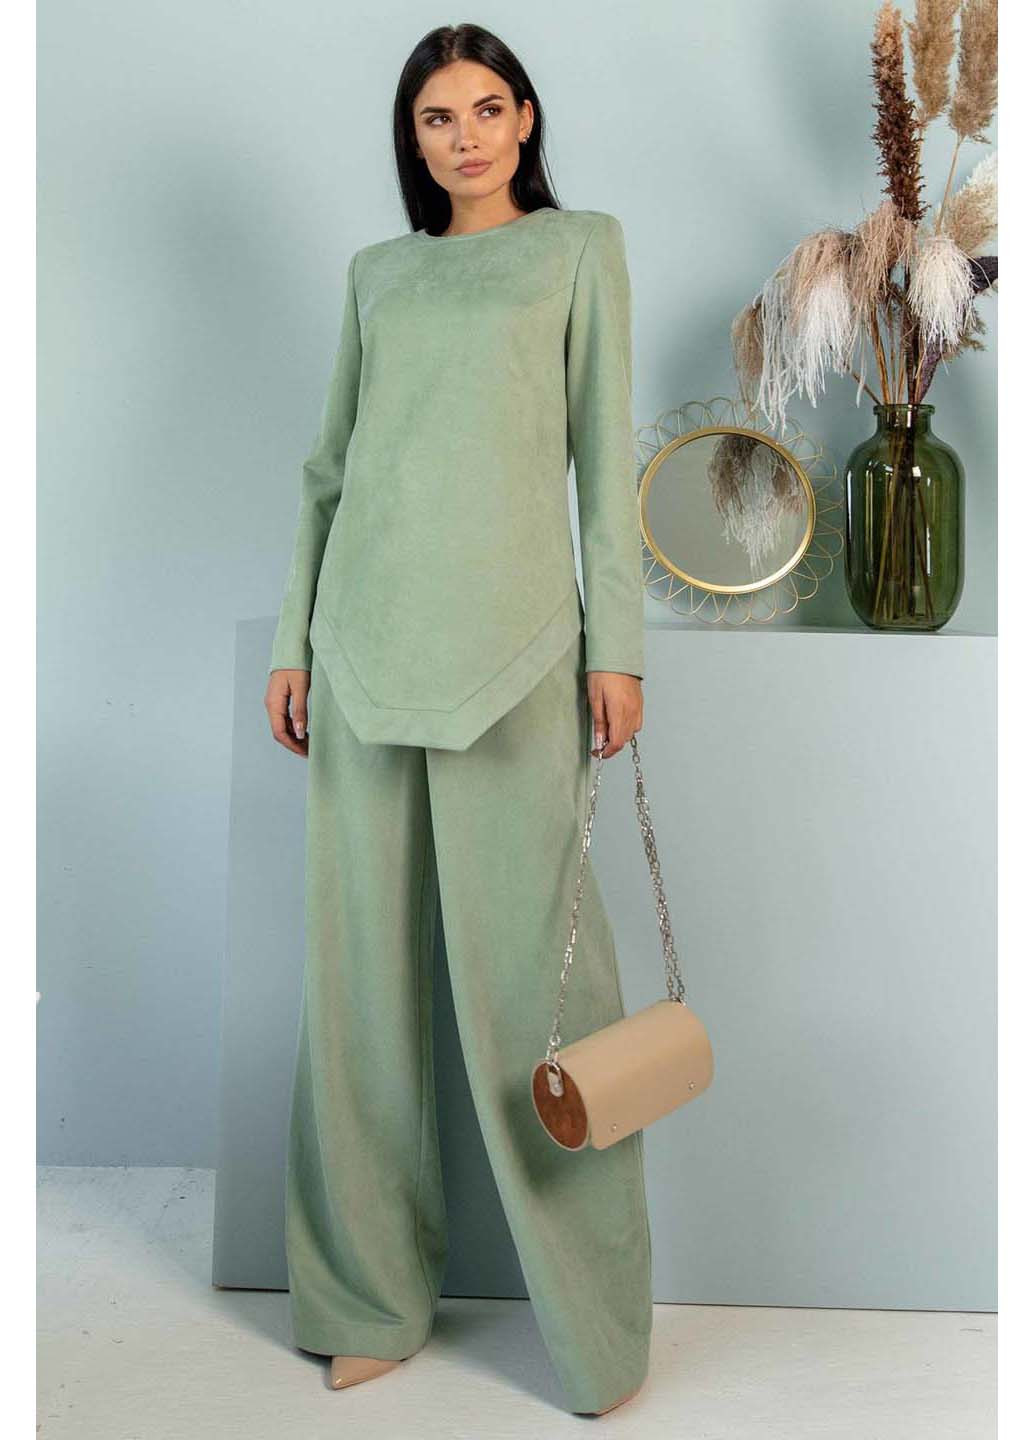 Зеленая демисезонная блуза Ри Мари